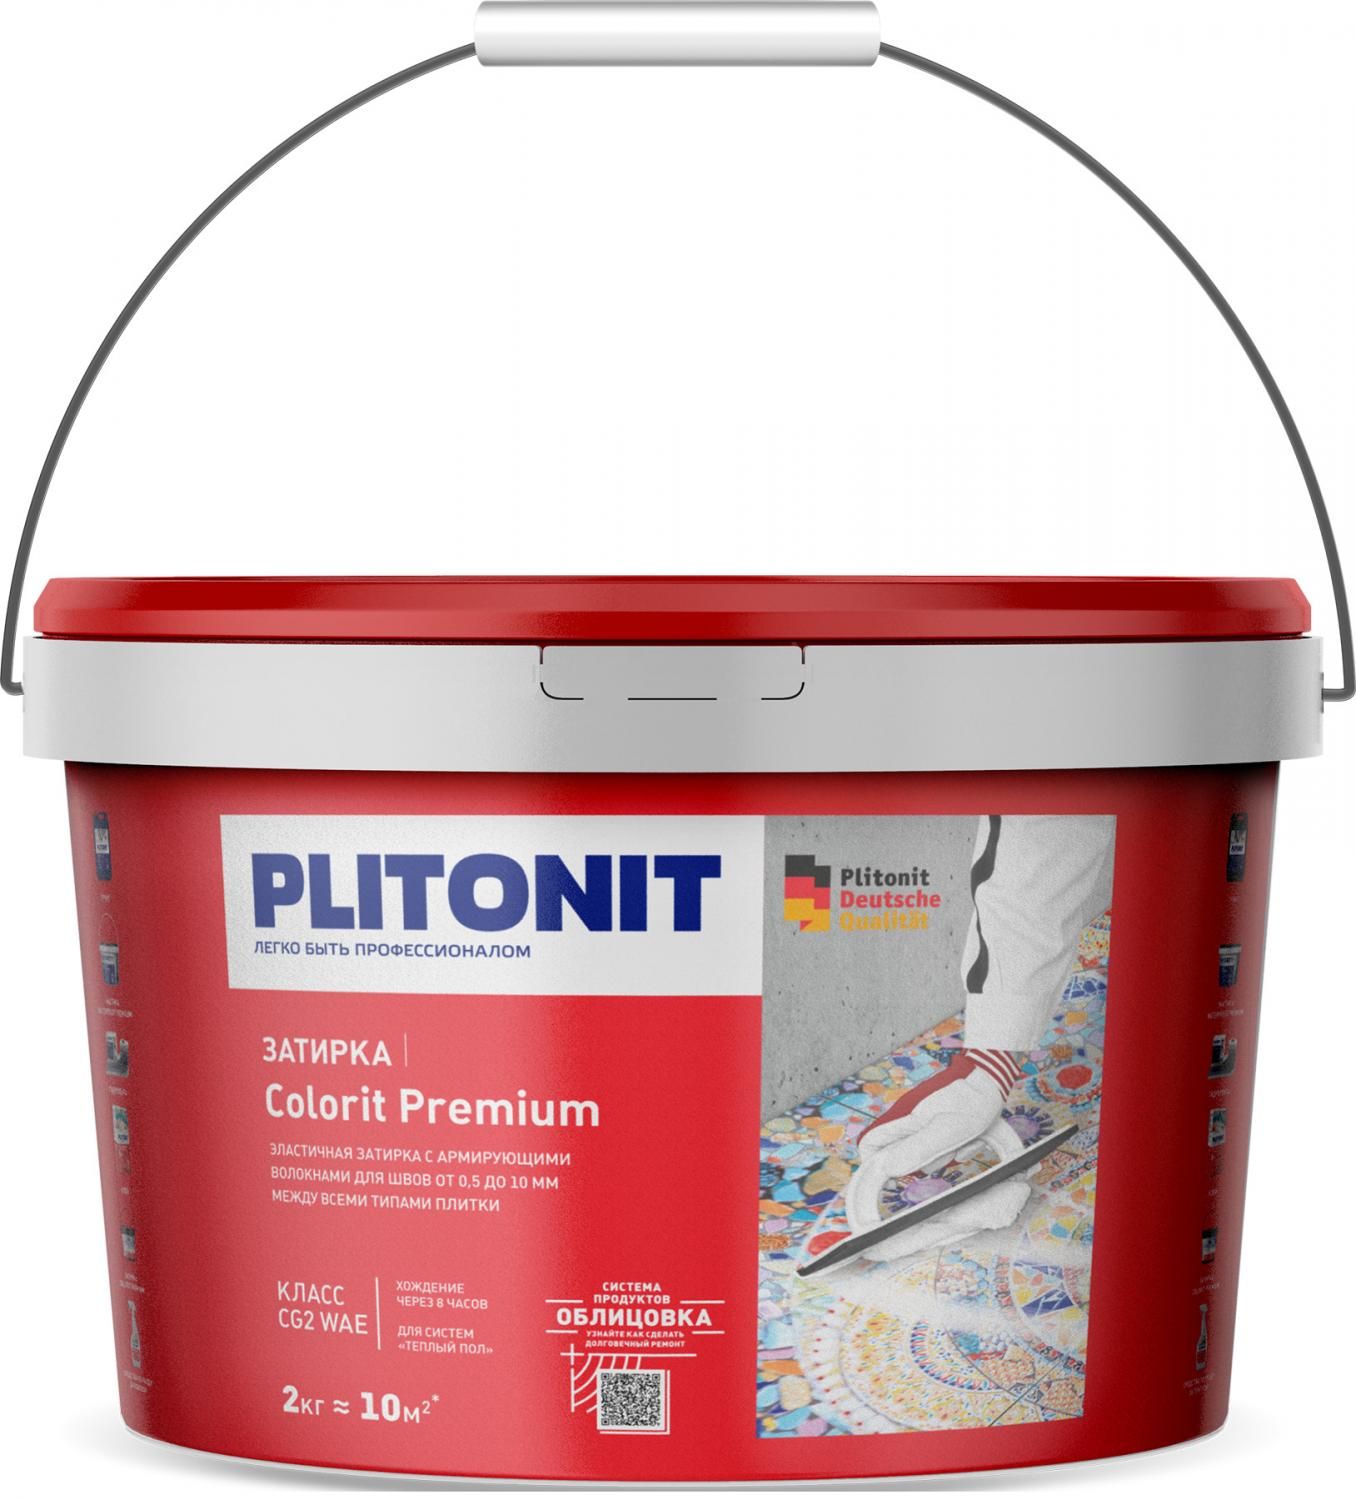 Купить Затирка Plitonit Colorit Premium темно-серая 2 кг цементная